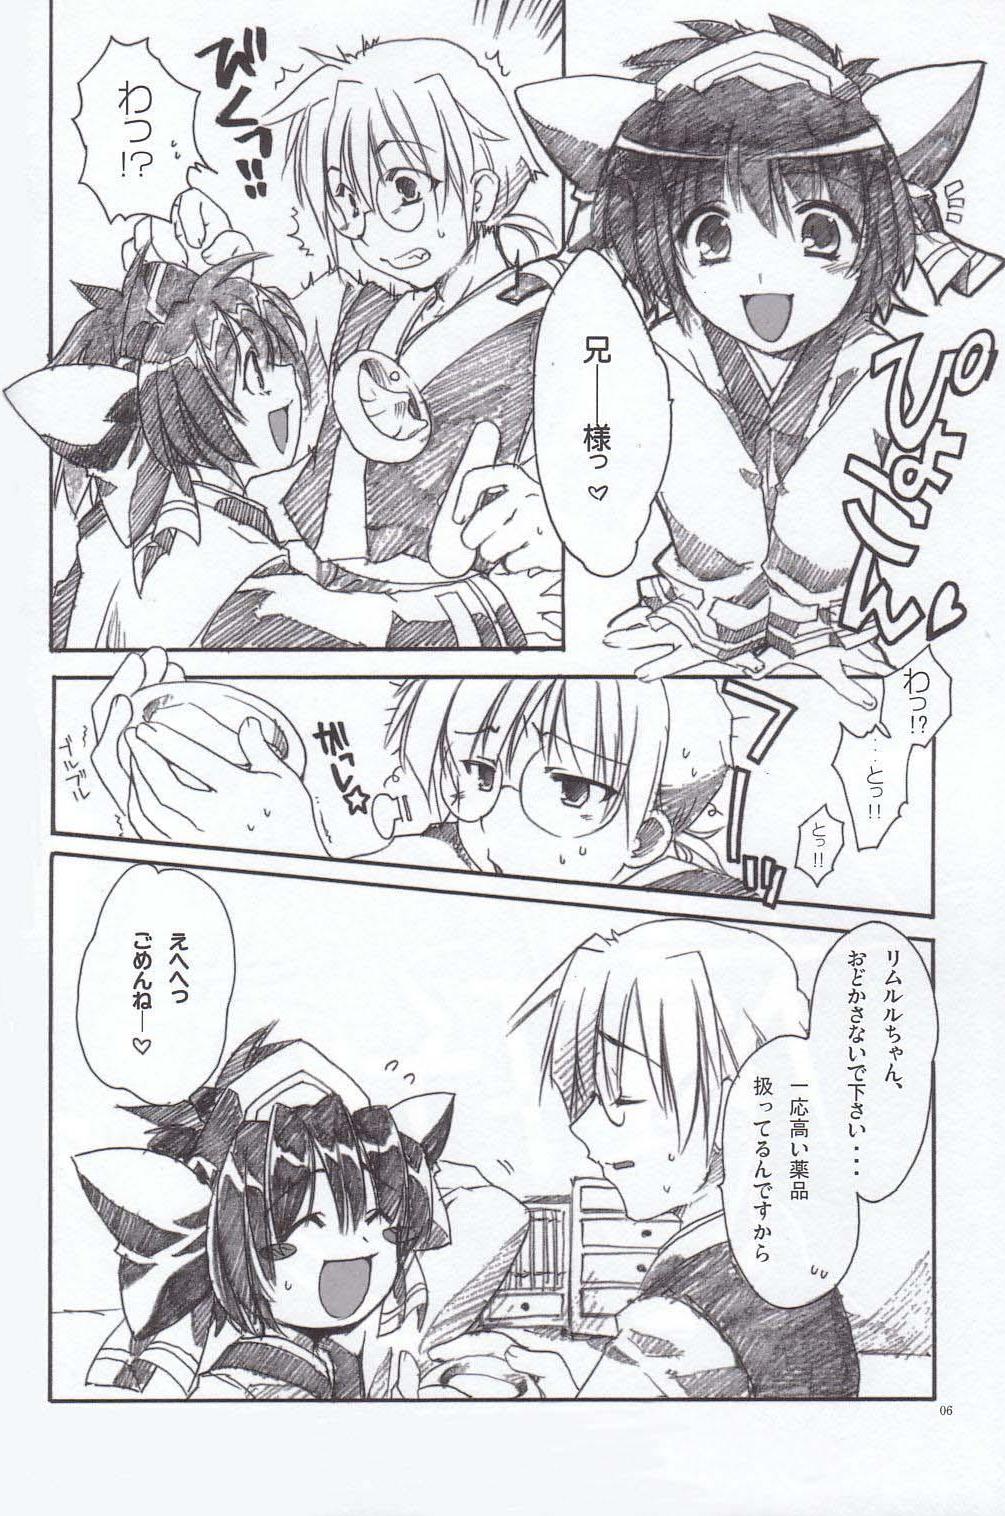 [AKABEi SOFT (Alpha)] Daisuki (Saumrai Spirits) page 5 full